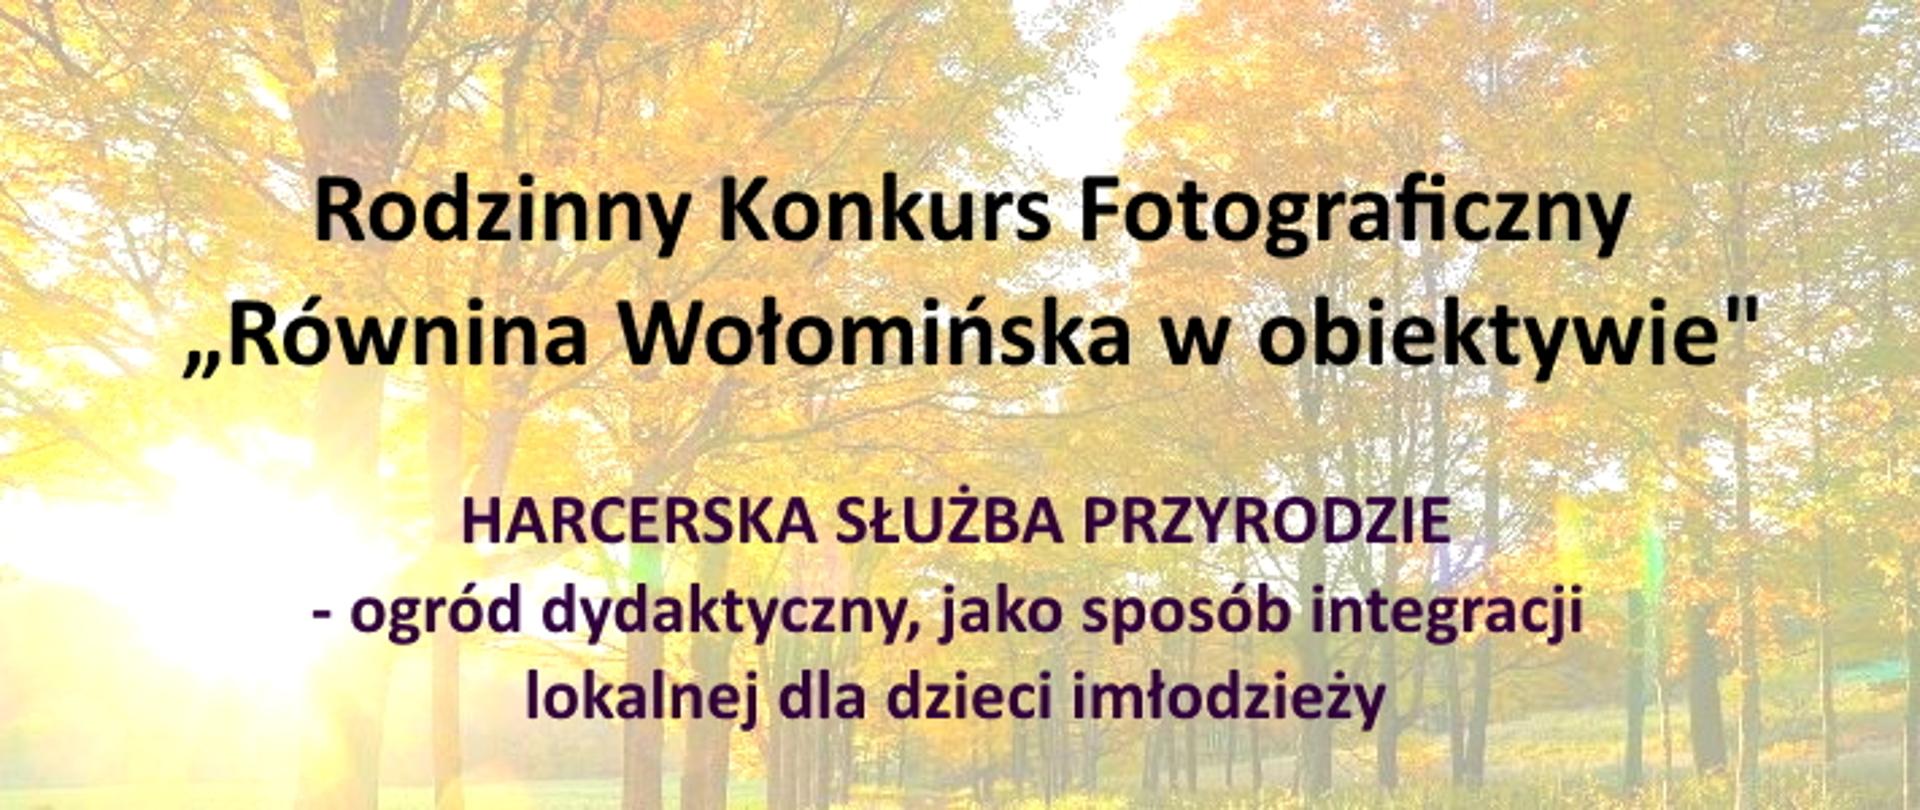 Rodzinny Konkurs Fotograficzny "Równina Wołomińska w Obiektywie" Harcerska służba przyrodzie - ogród dydaktyczny jako sposób integracji lokalnej dla dzieci i młodzieży